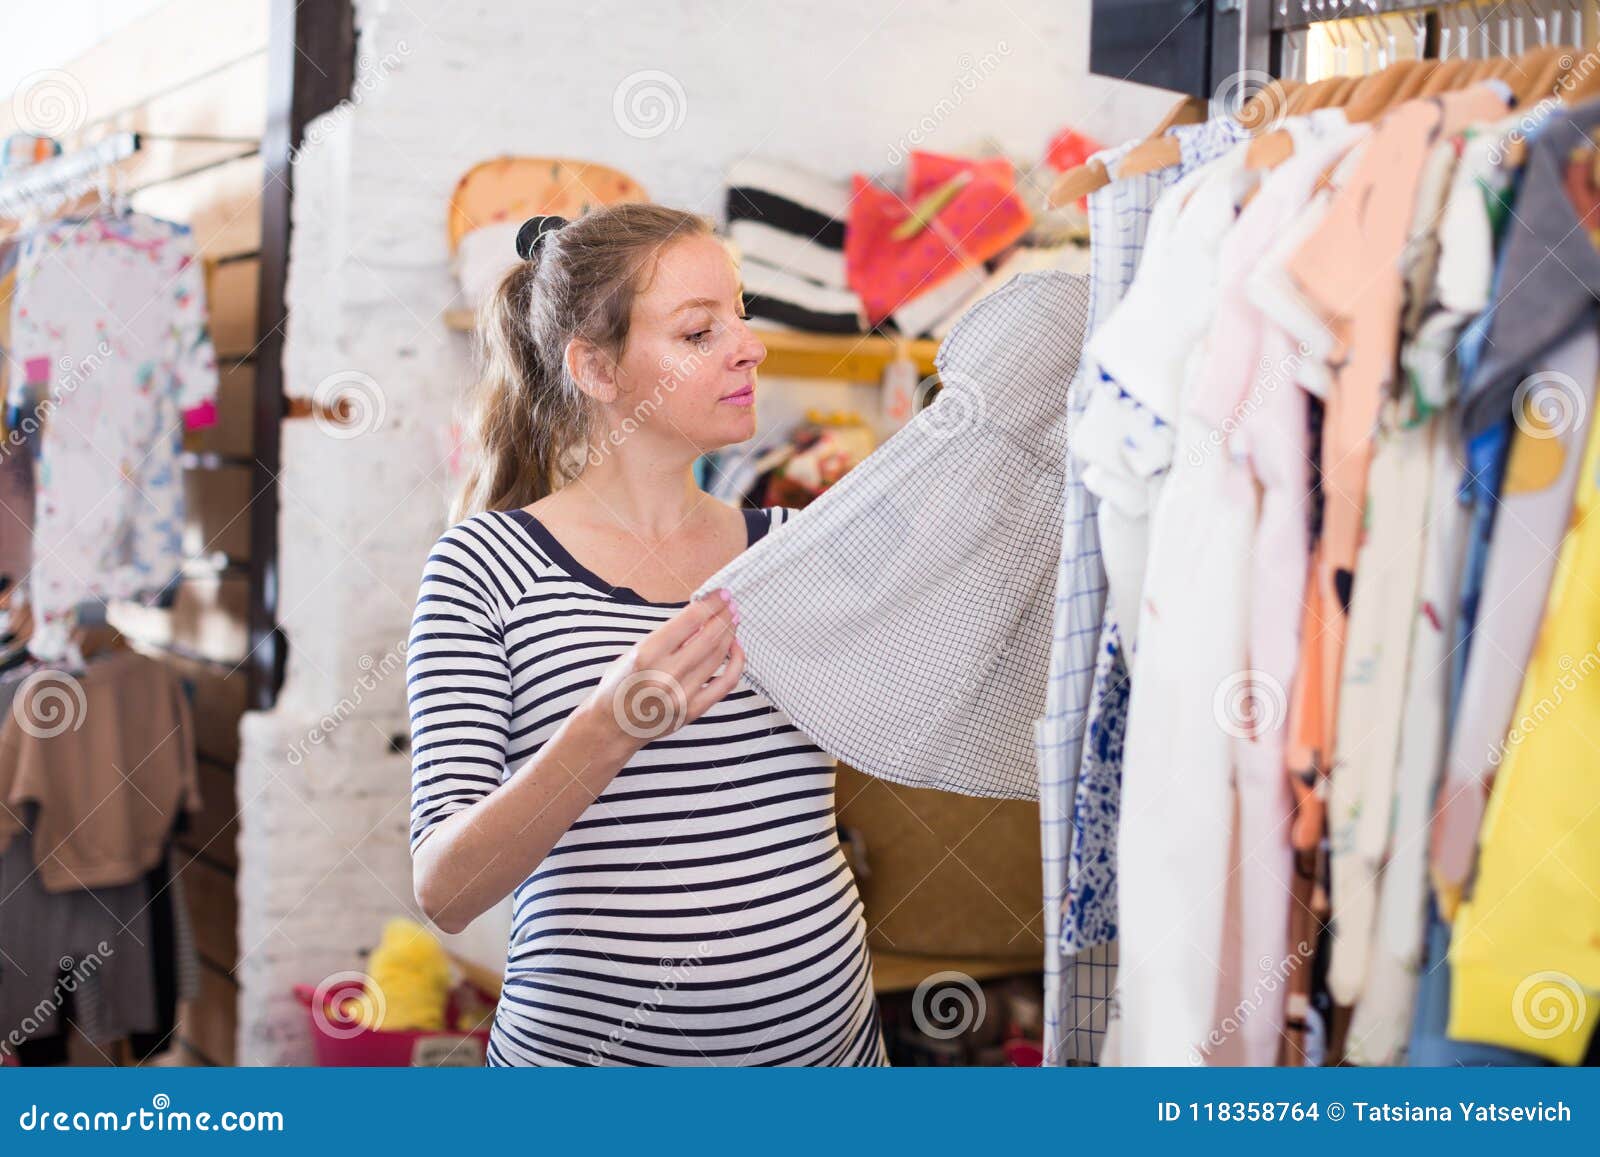 Compras De La Mujer Embarazada En La Tienda De Ropa Para Los Bebés Foto de archivo - Imagen de inglés, 118358764